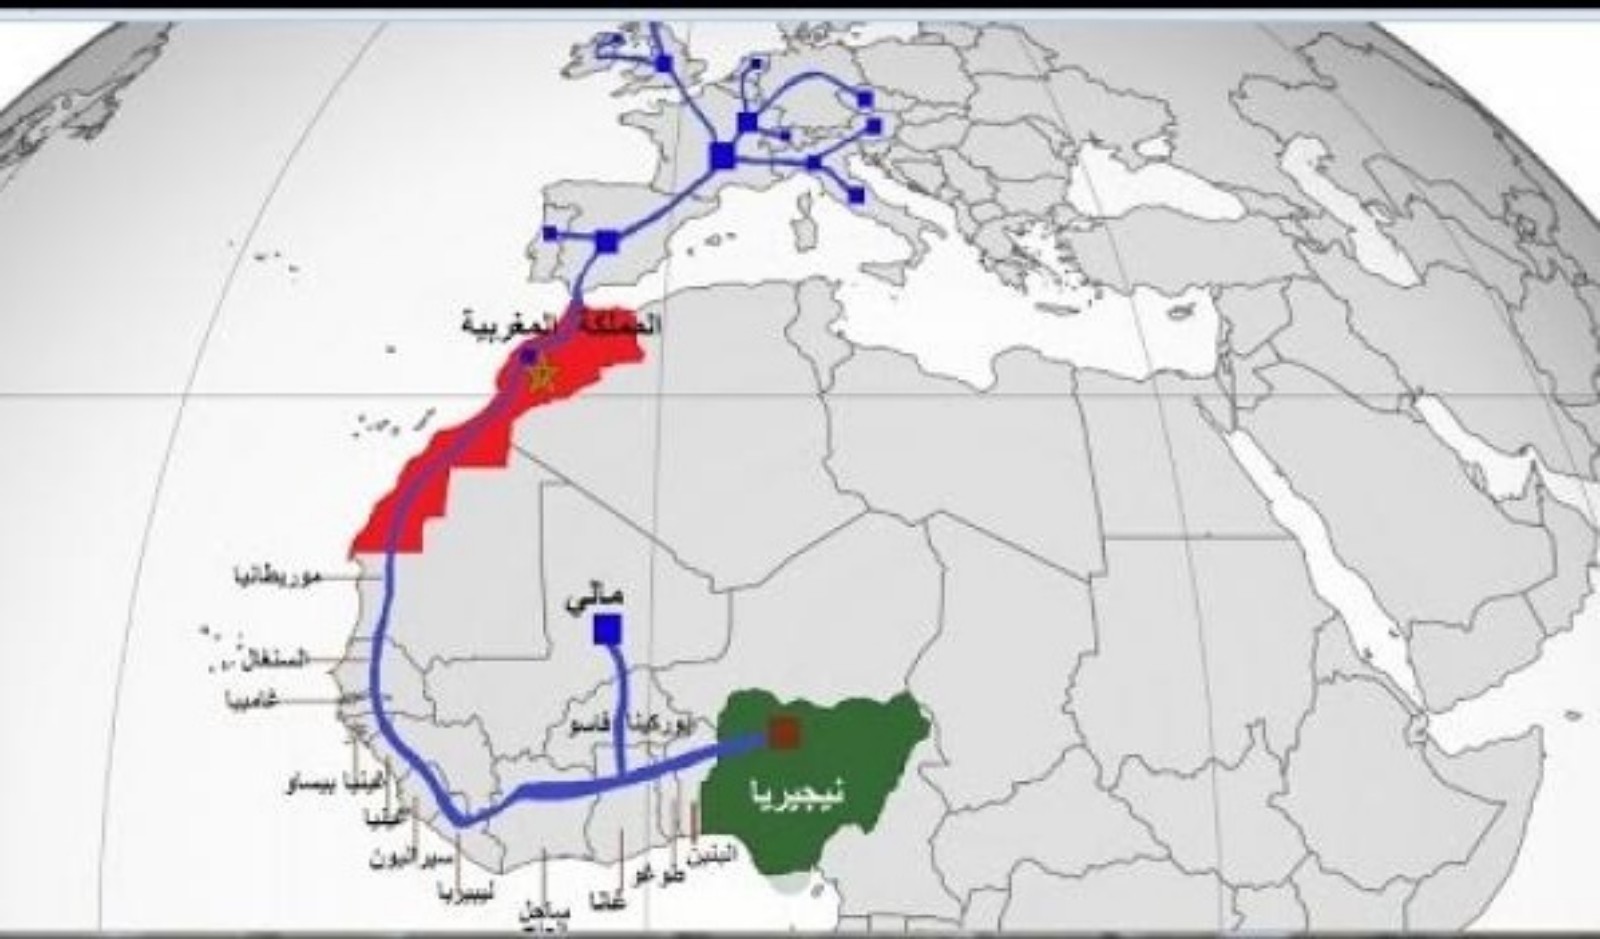 الرباط تحتضن غداً حفل توقيع إتفاقية تنفيذ خط الغاز المغرب نيجيريا بمشاركة مجموعة دول غرب أفريقيا